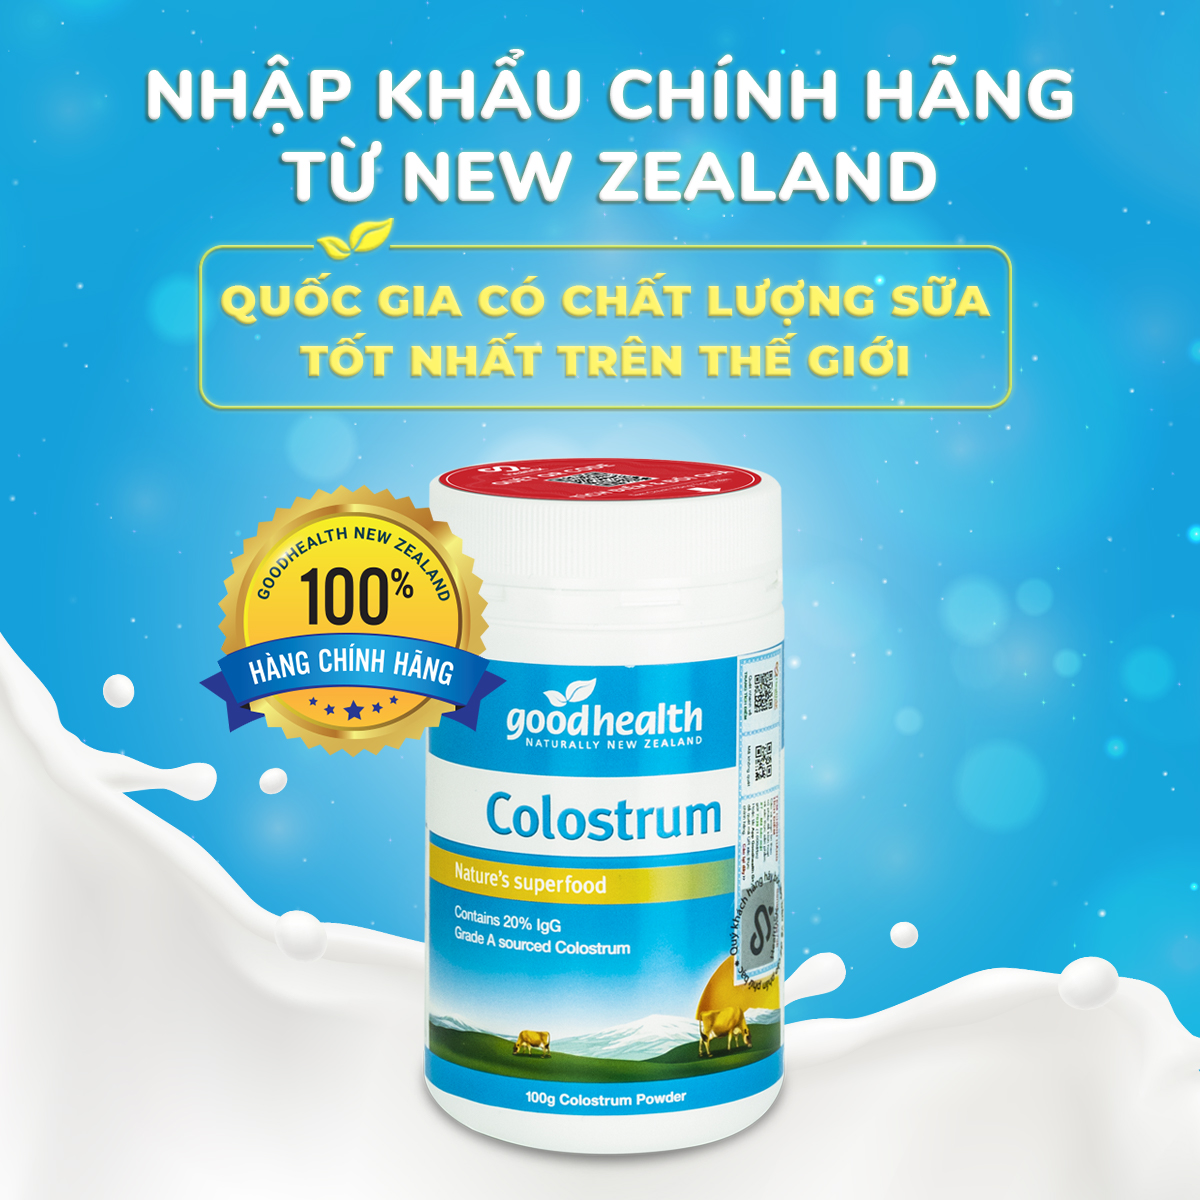 Sữa non Goodhealth Colostrum_Nhập khẩu chính hãng New Zealand